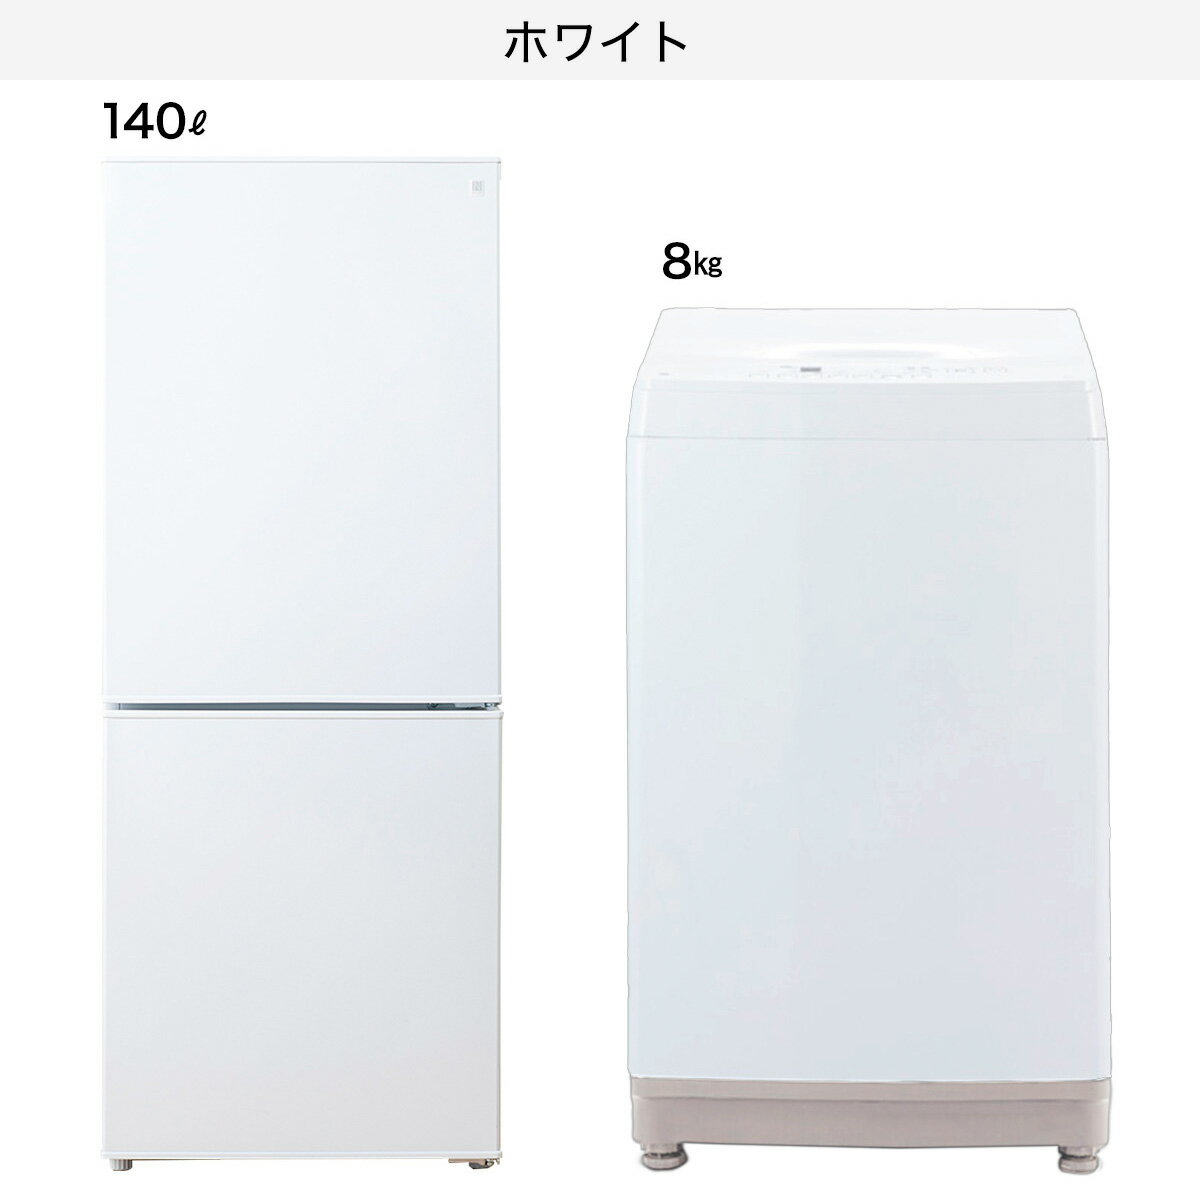 【家電2点セット】140L冷蔵庫+8kg洗濯機...の紹介画像2